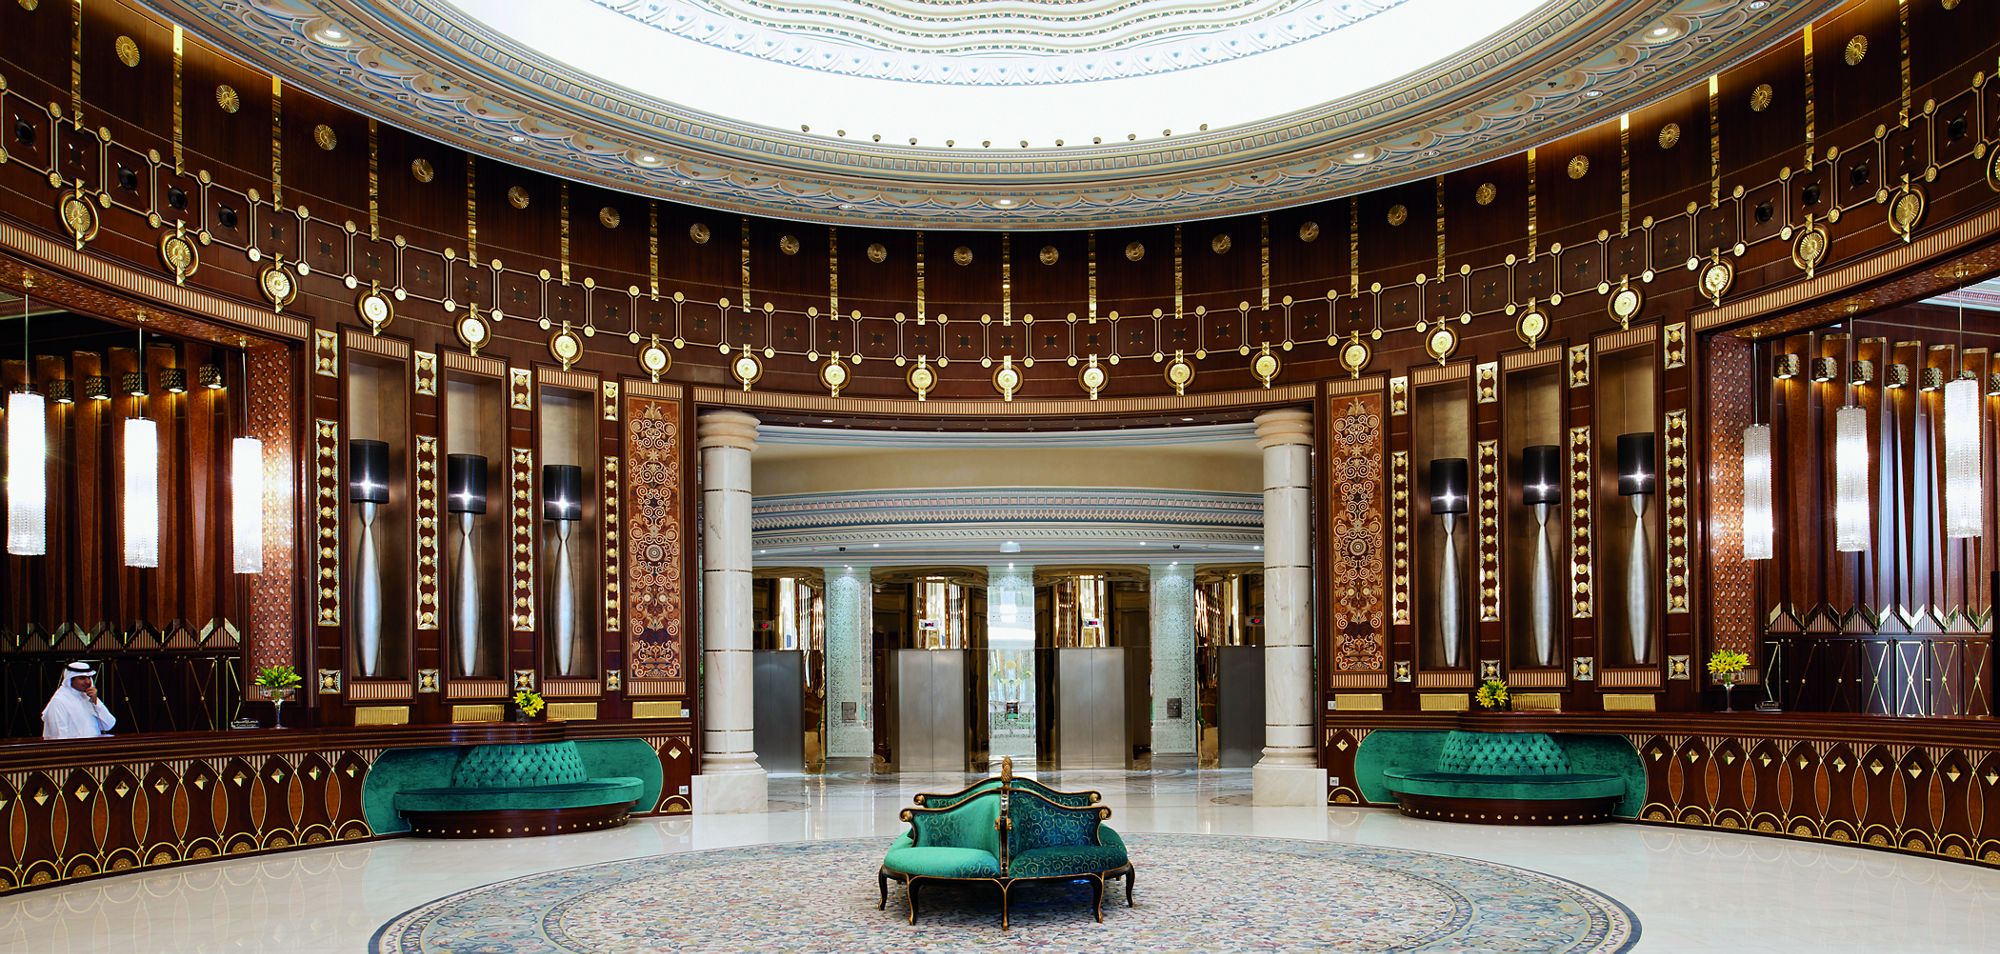 Отель находится в 40 минутах езды от международного аэропорта Король Халид и рядом с дипломатическим районом Эр-Рияда